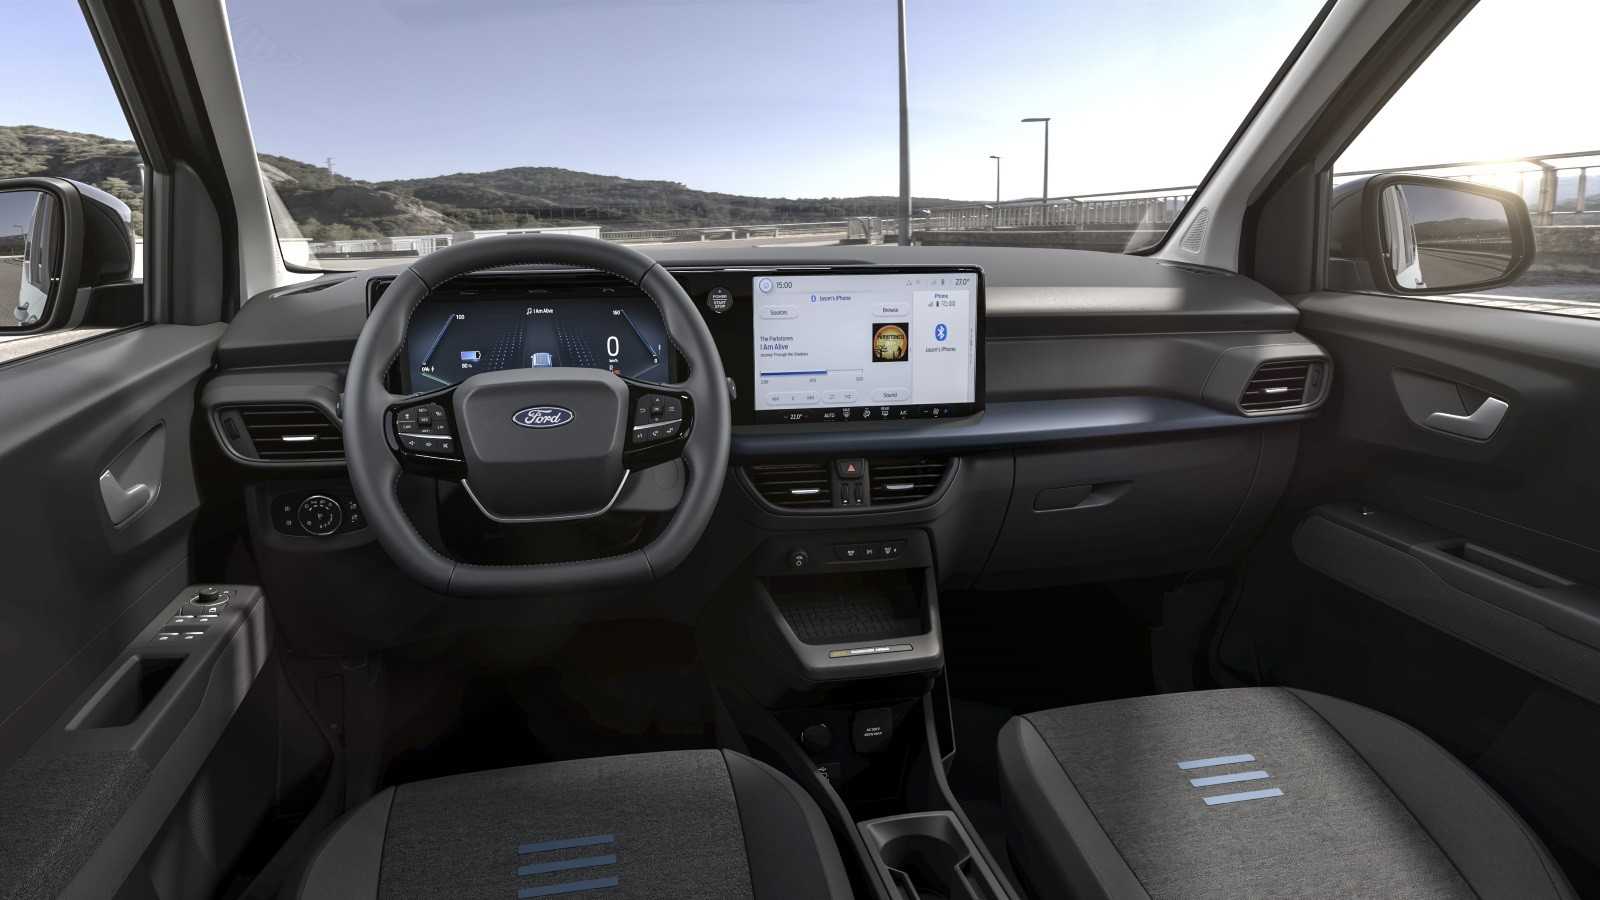 Ford Tourneo Courier: Công nghệ tương lai cùng với tính thực dụng hiện tại